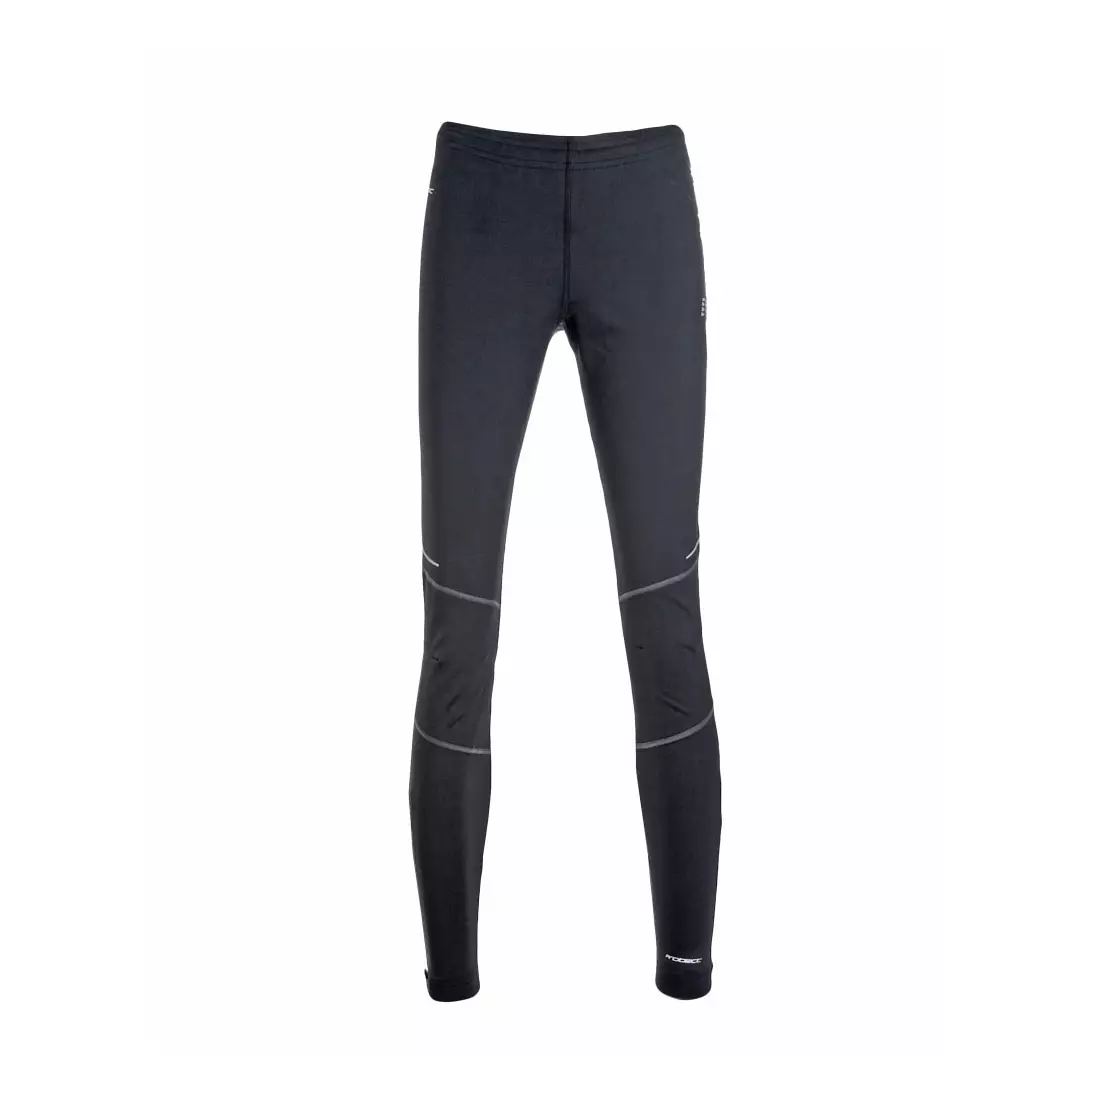 NEWLINE ICONIC PROTECT TIGHTS 10132-060 - dámské zateplené běžecké kalhoty, barva: Černá